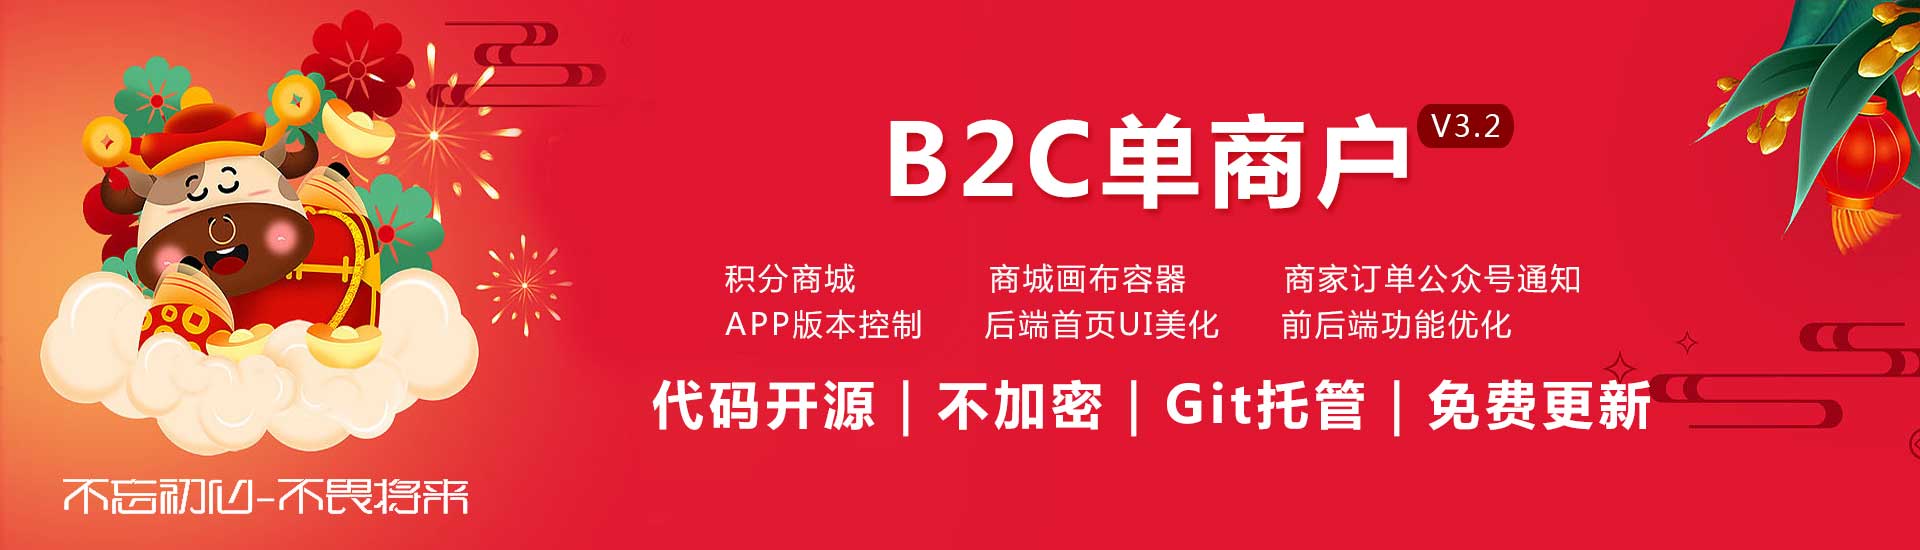 单商户B2C系统3.2版本